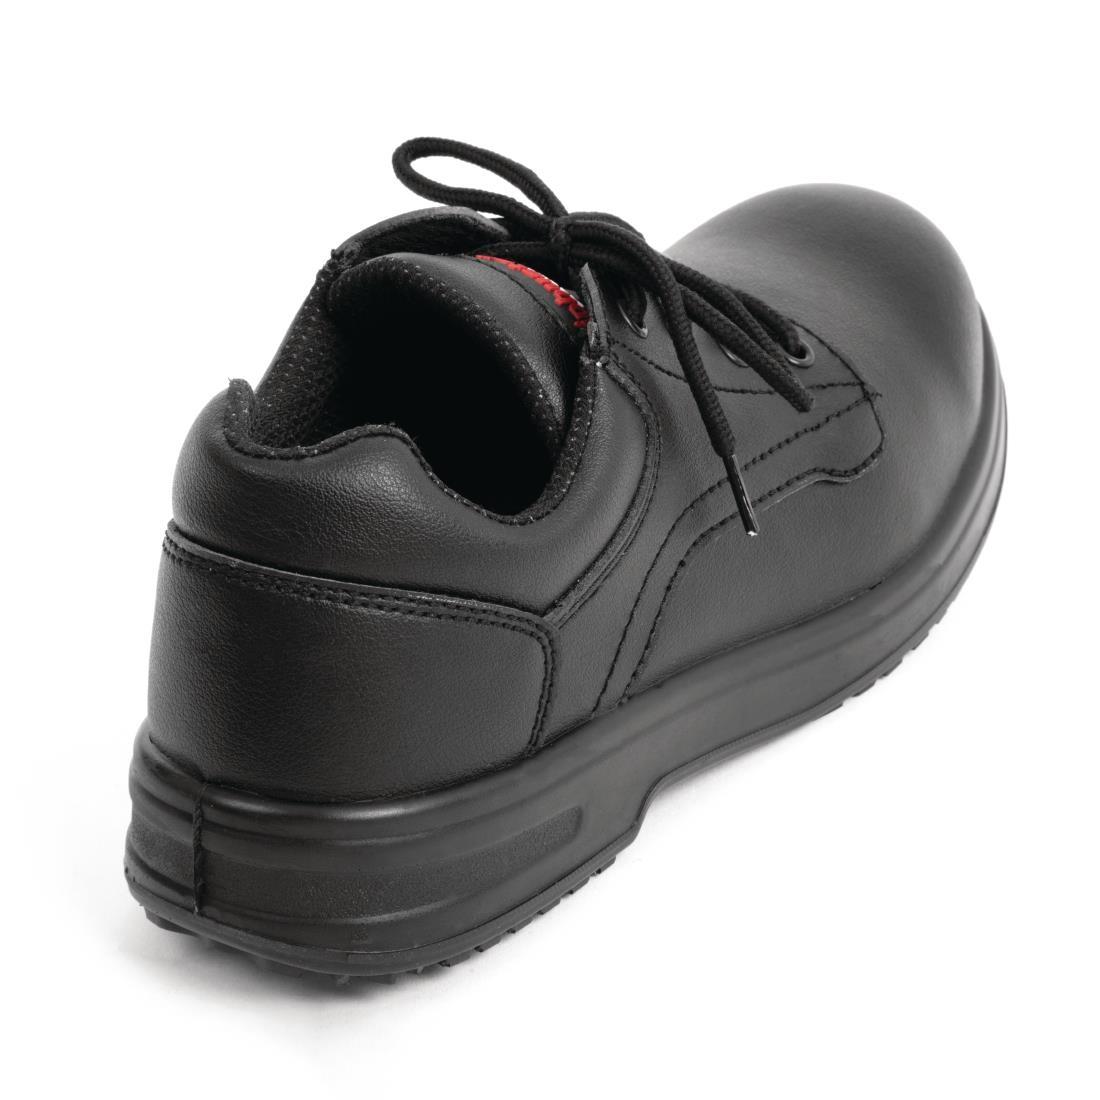 Slipbuster Basic Shoes Slip Resistant Black 36 - BB498-36  - 3